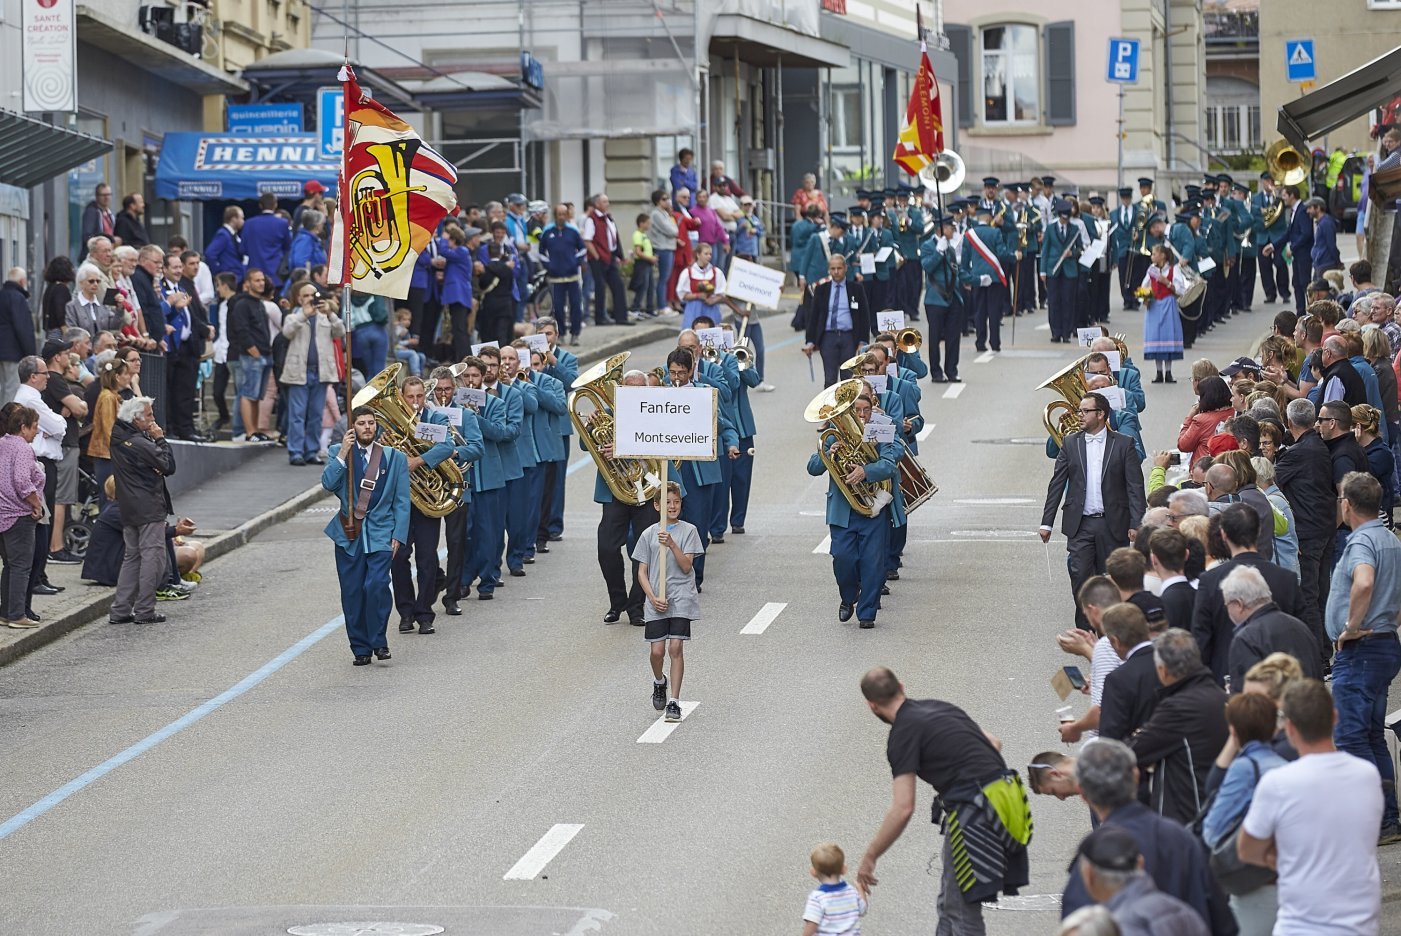 La fanfare de Montsevelier en concours de parade lors de la 40e Fête jurassienne de musique à Tramelan en 2019.